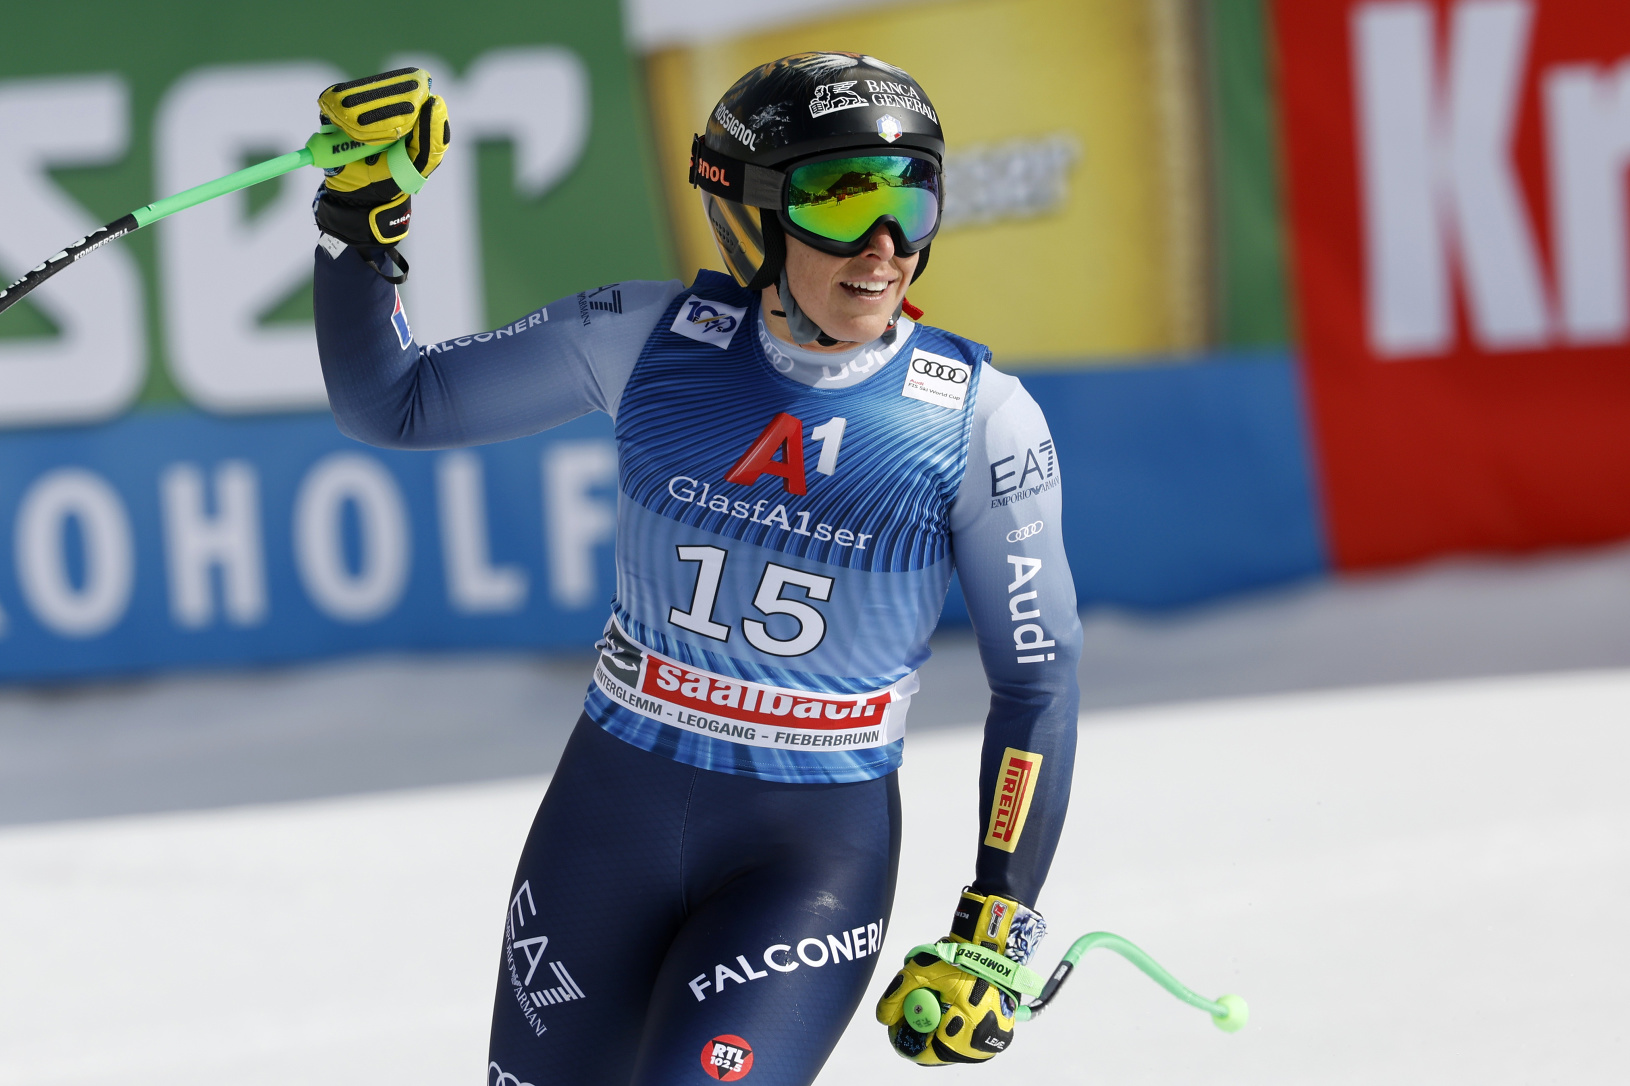 Talianska lyžiarka Federica Brignoneová